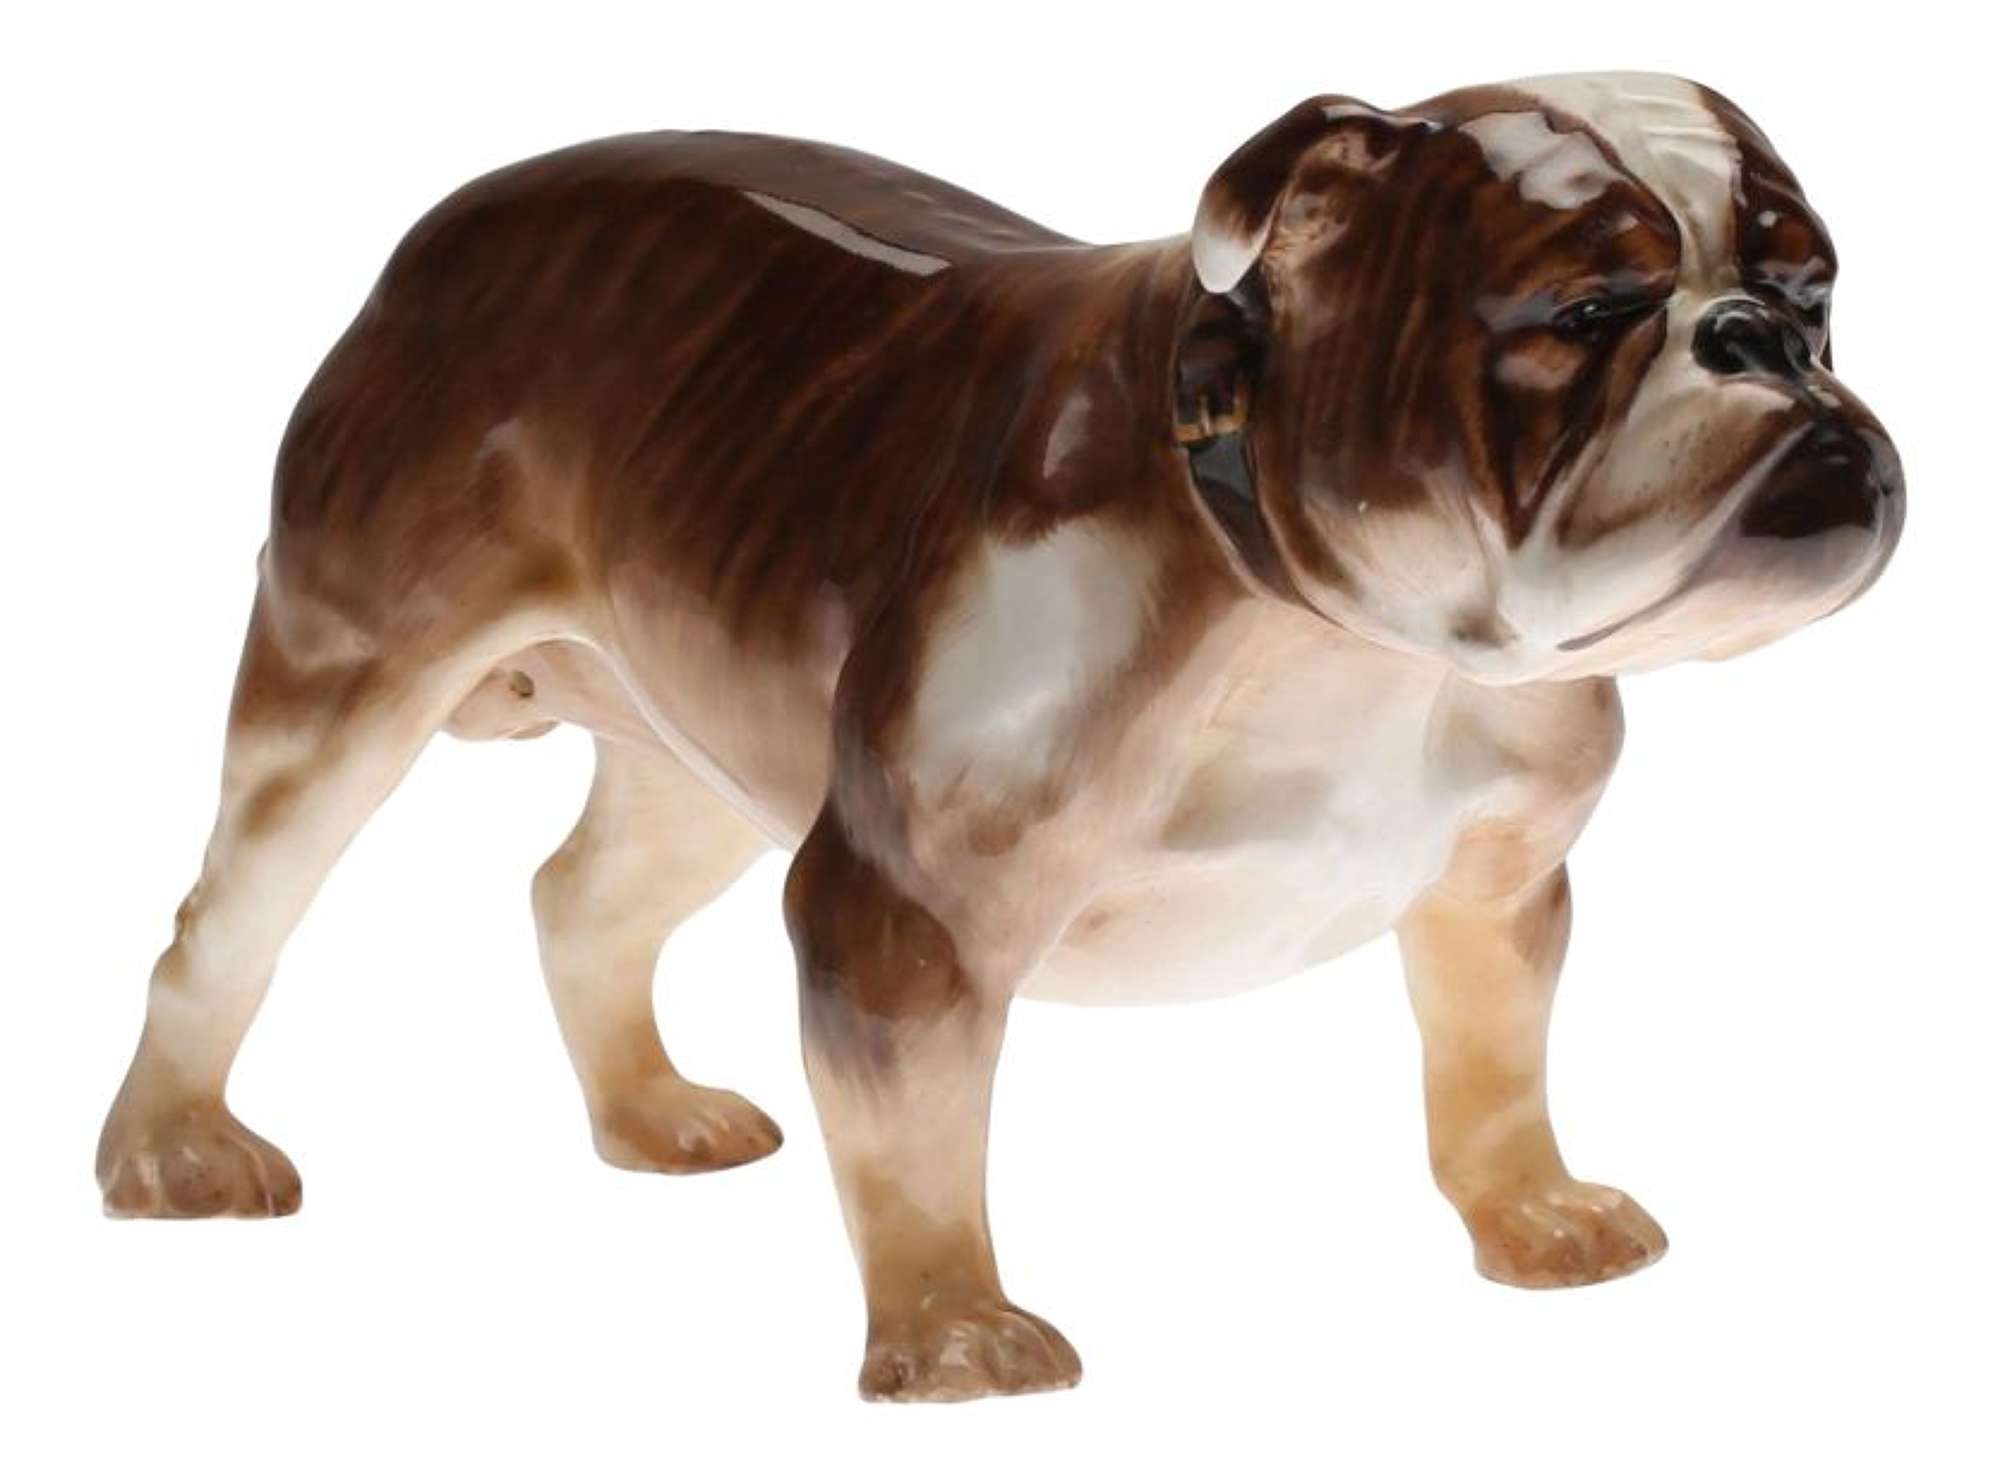 Bulldog from Royal Doulton